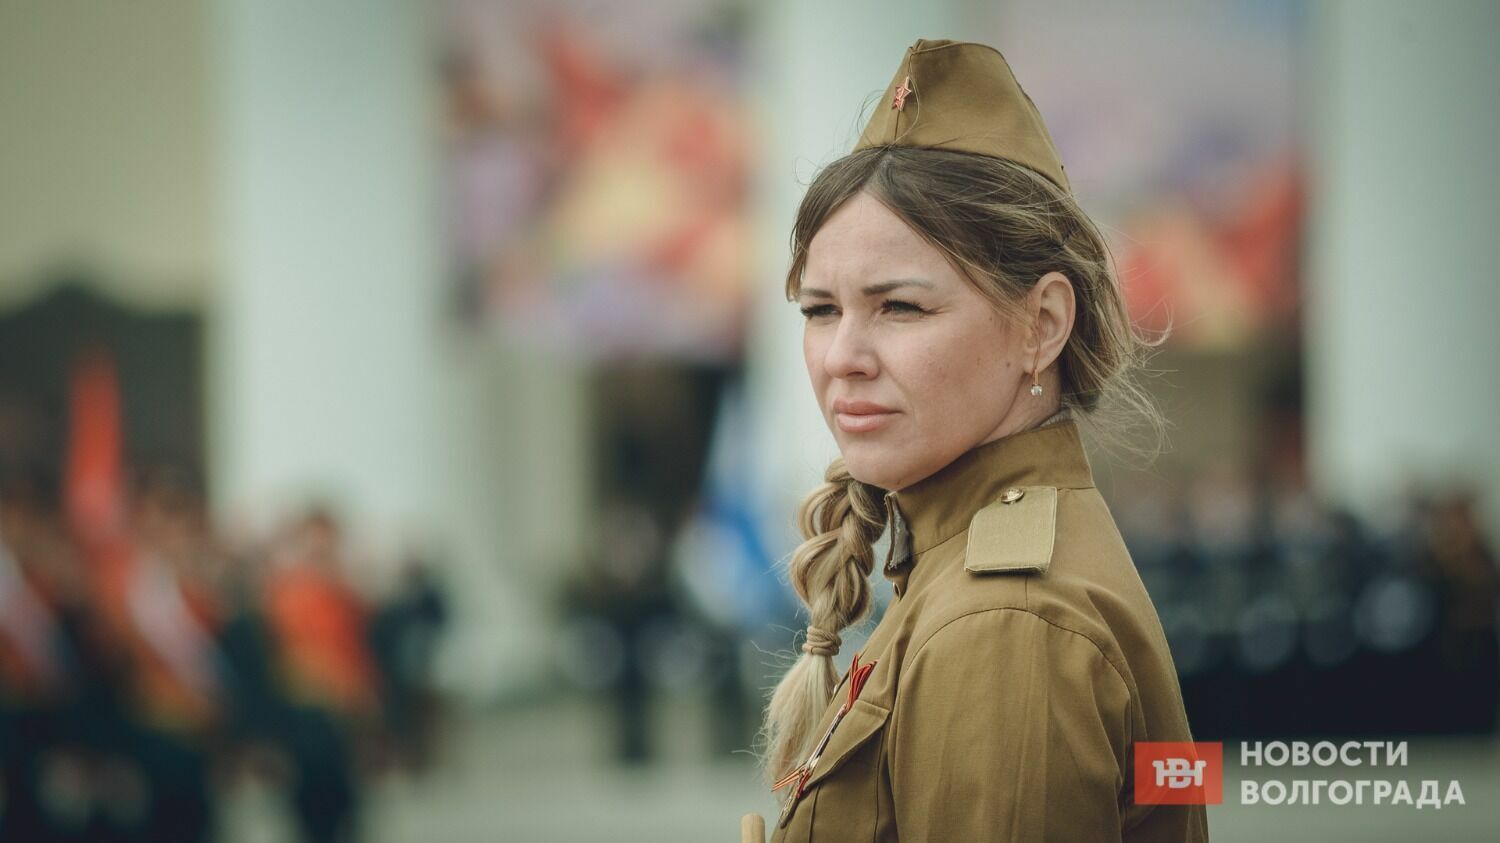 Девушки в военной форме традиционно становятся украшением парада в Волгограде